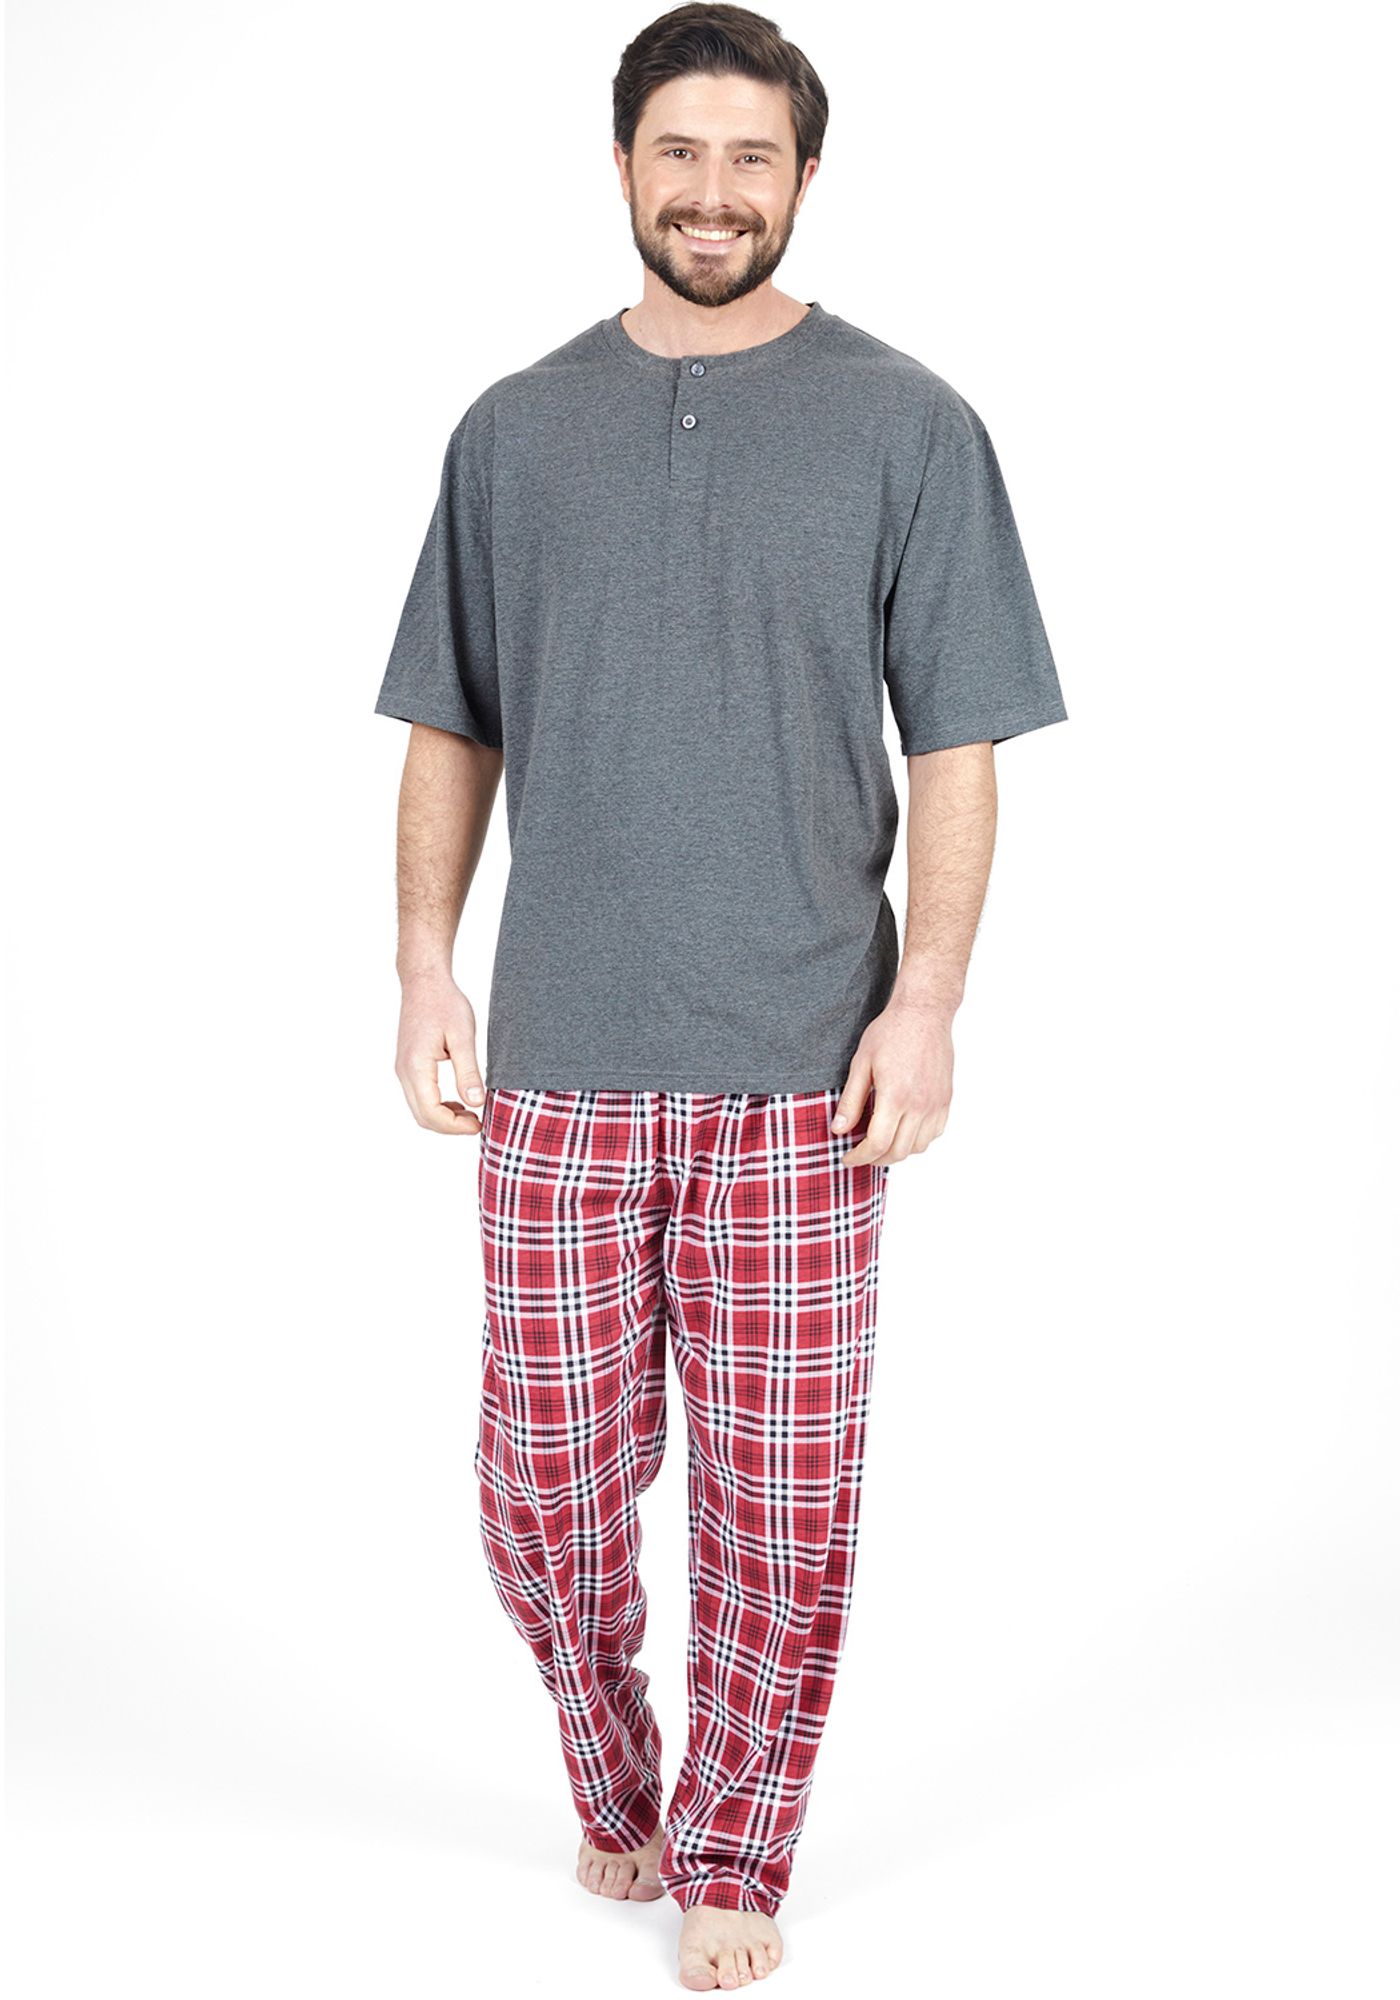 Lo encontré personal Simplificar Pijamas de Hombre de Calidad Premium | Compra en Kayser